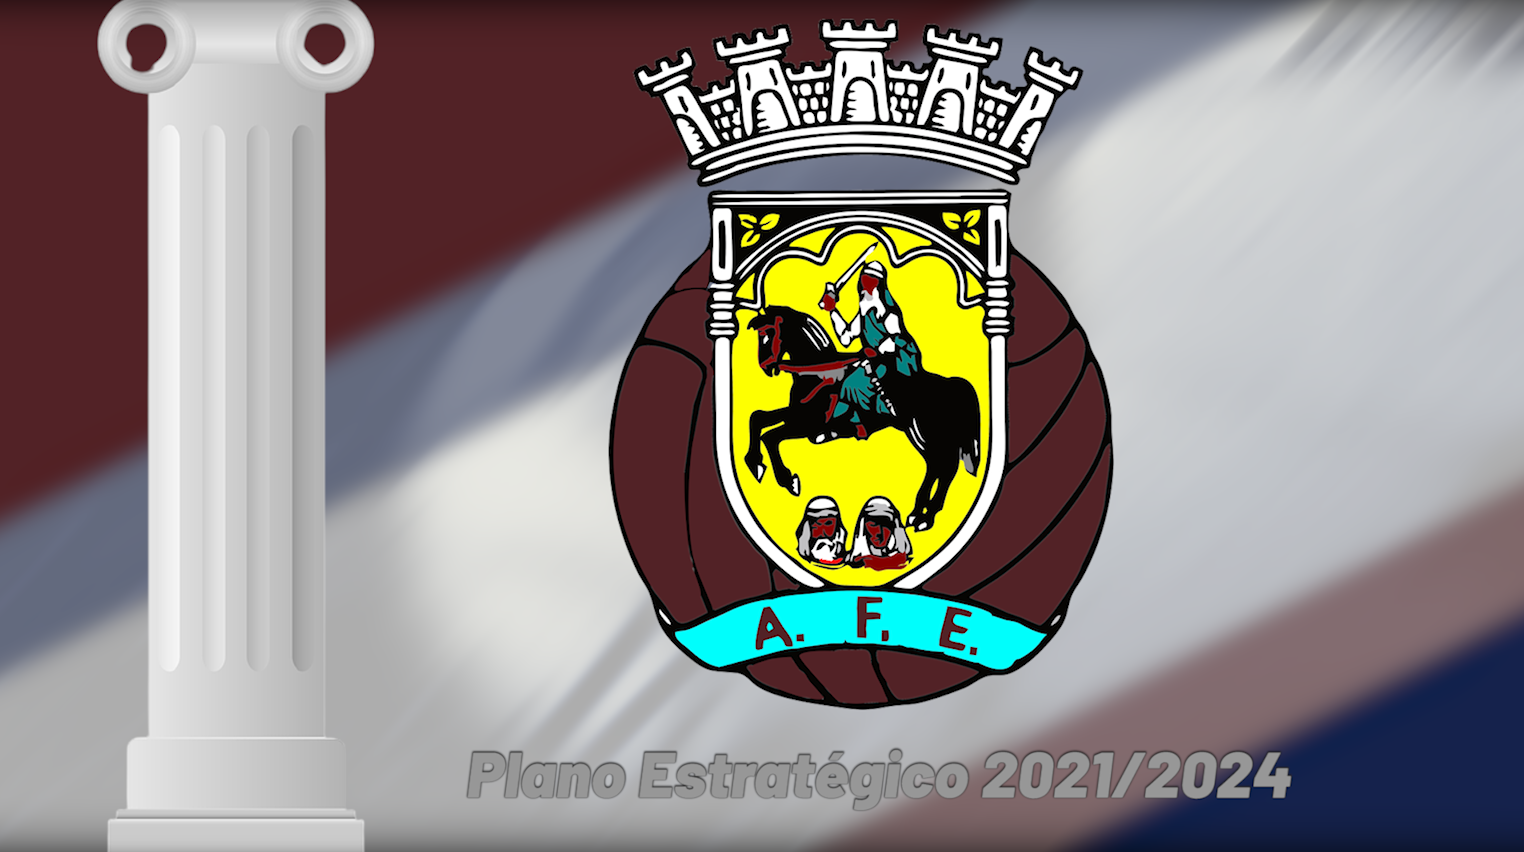 CLUBES E AFE CONSTRUÍRAM PLANO ESTRATÉGICO 2021/2024